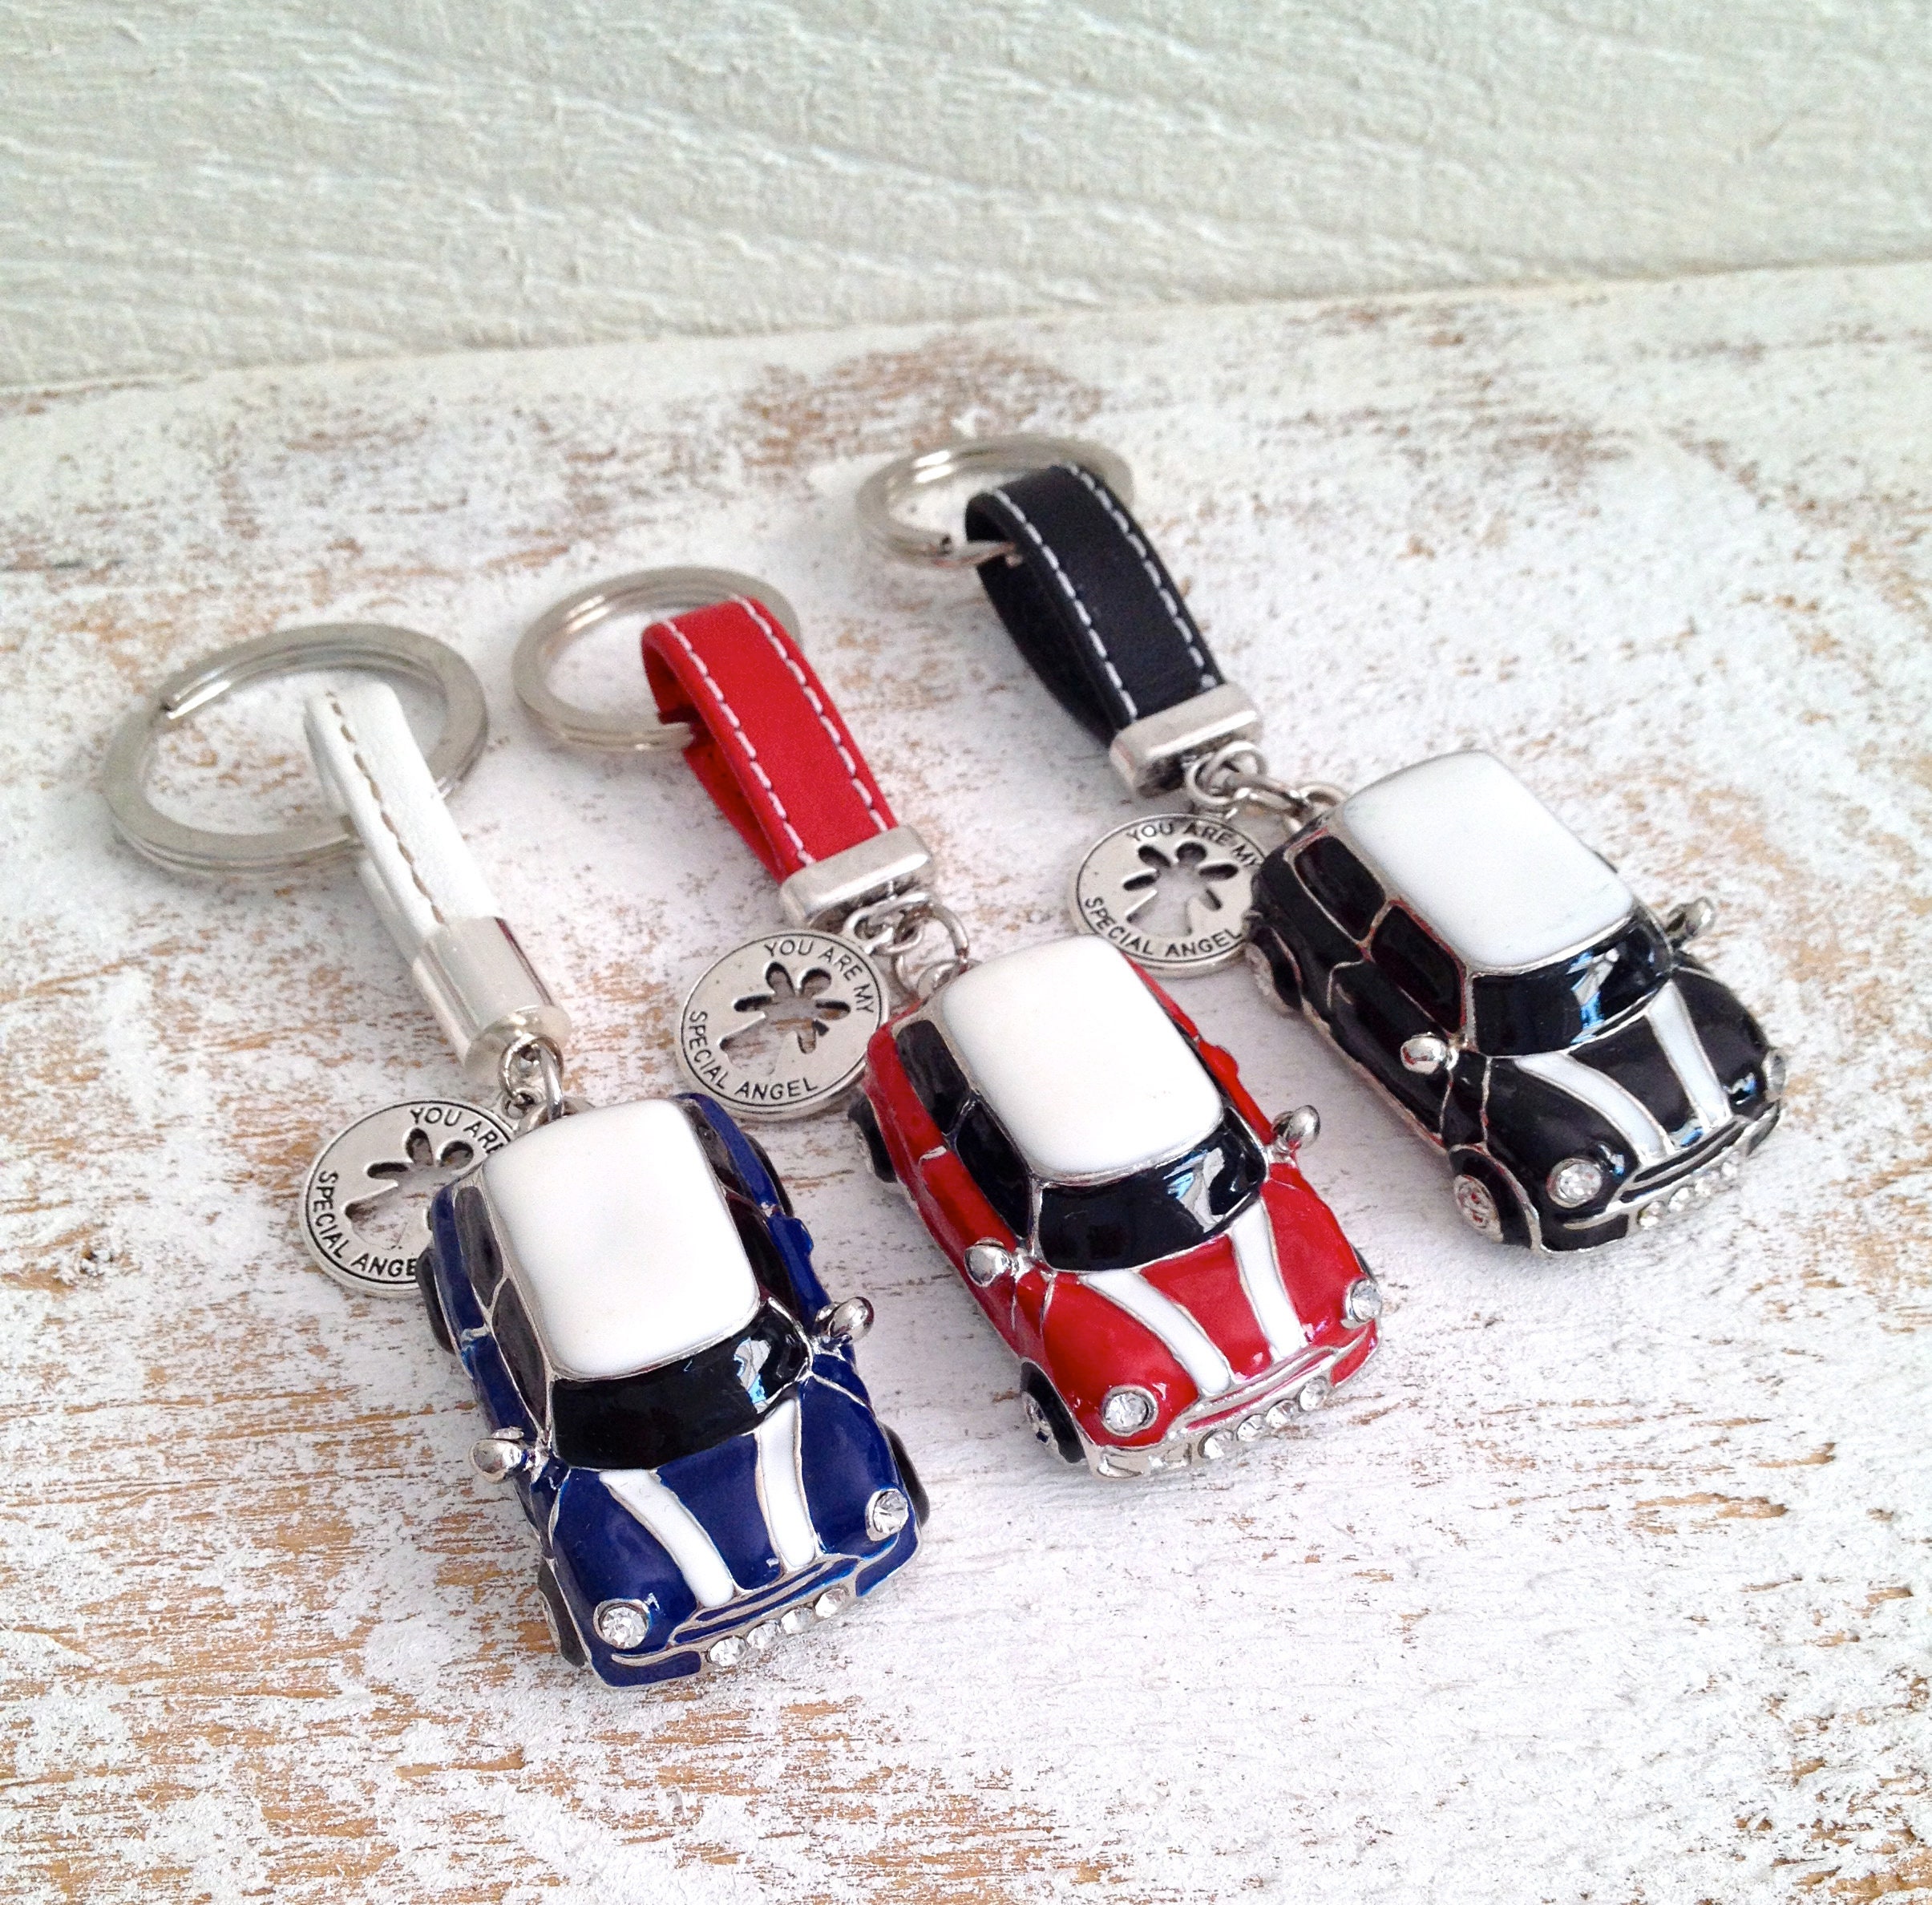 Langer Kette Metall Schlüsselanhänger Auto Logo Schlüsselanhänger für Mini  Cooper